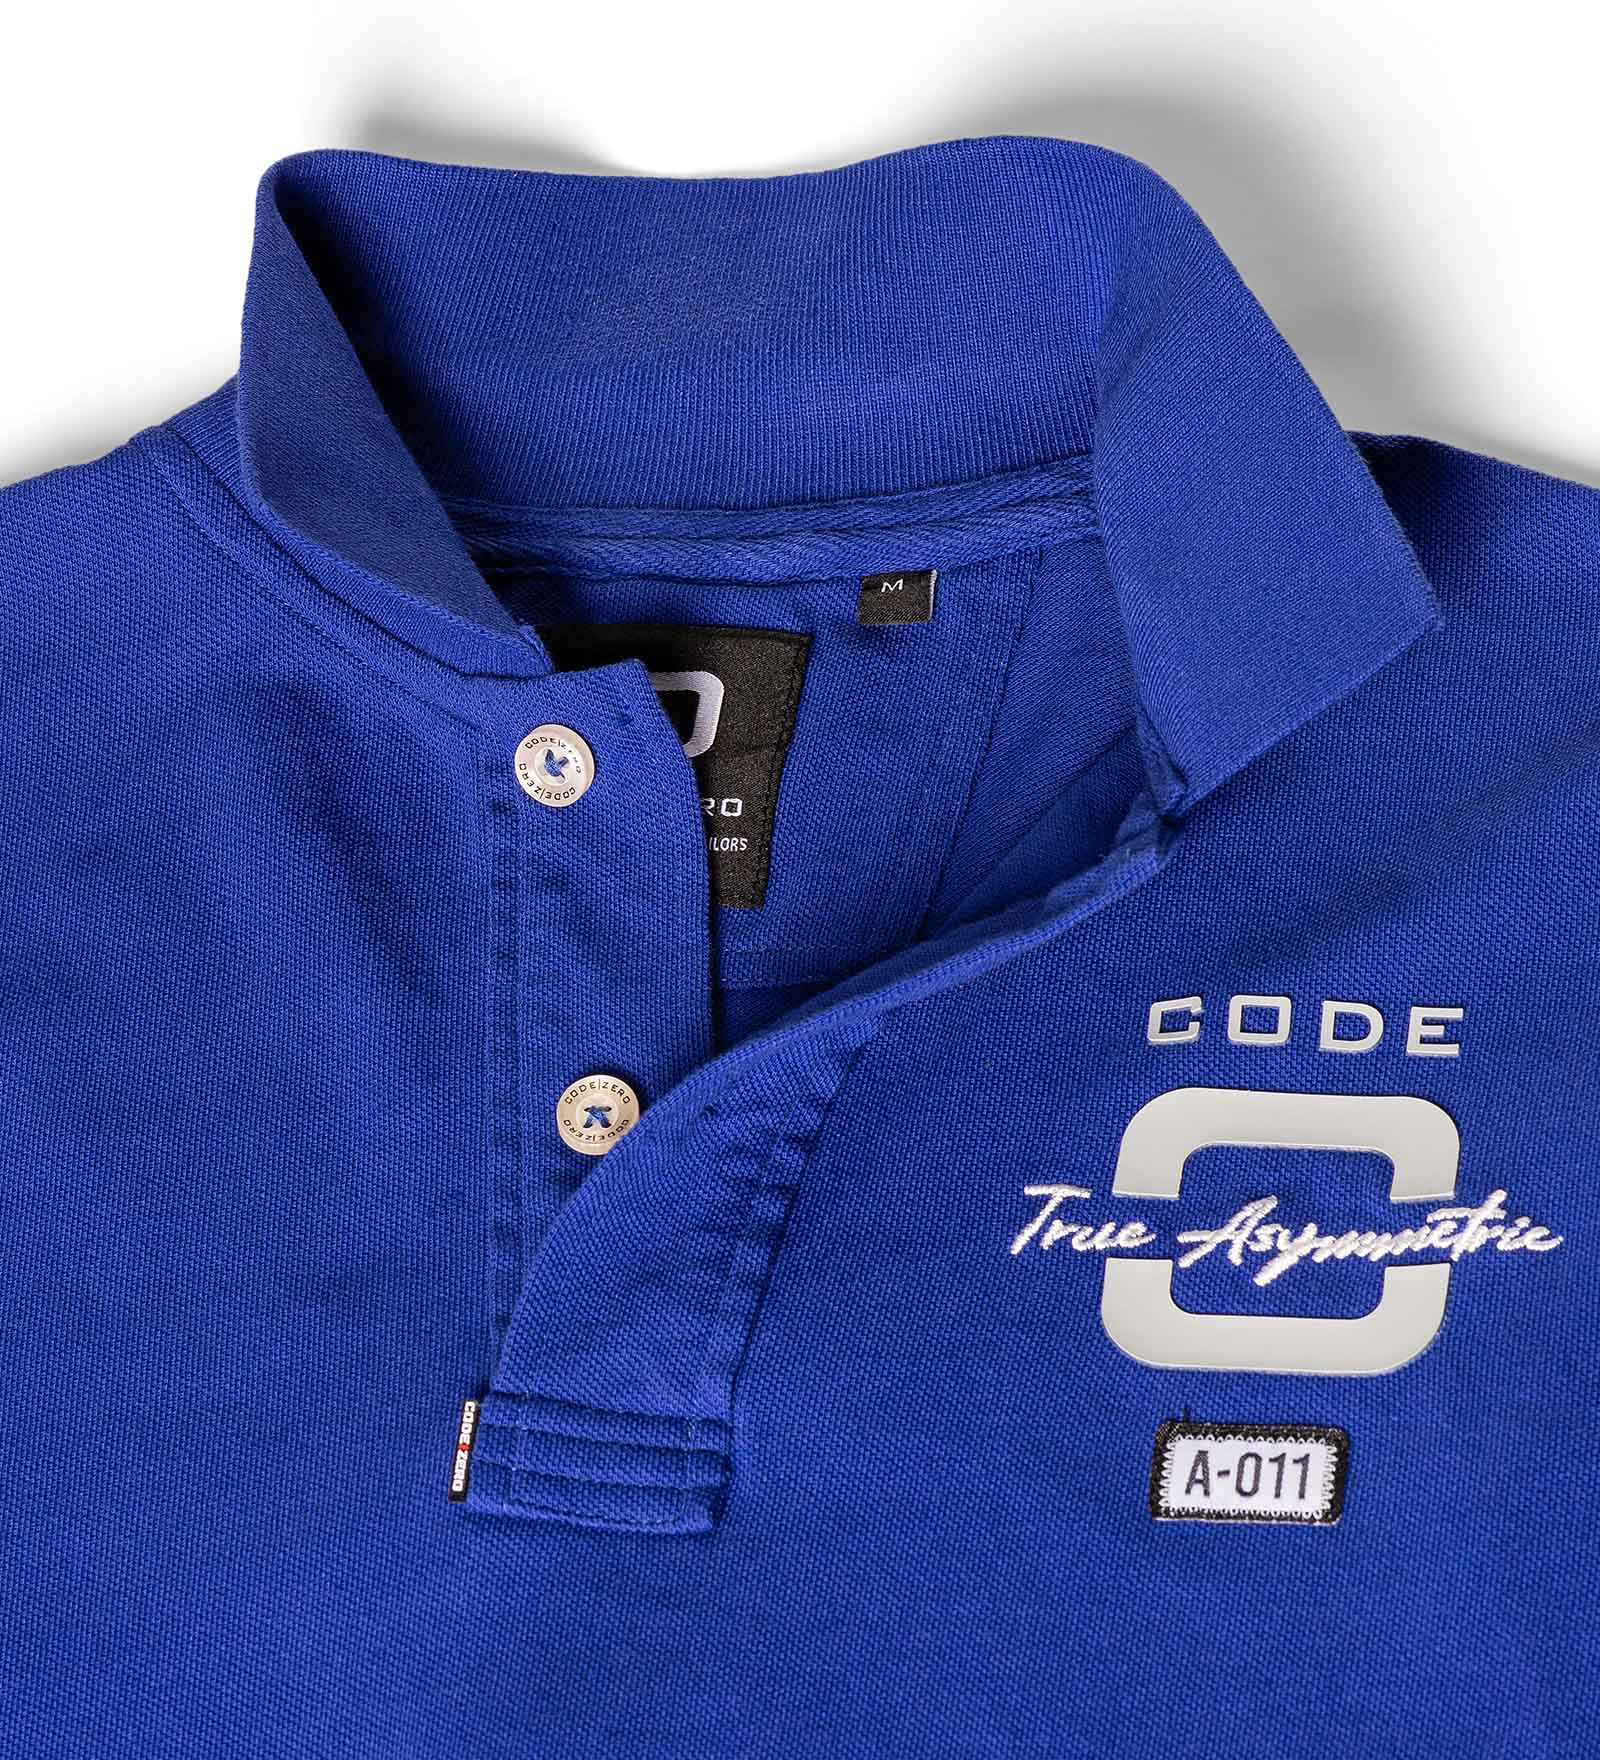 Blue polo shirt collar